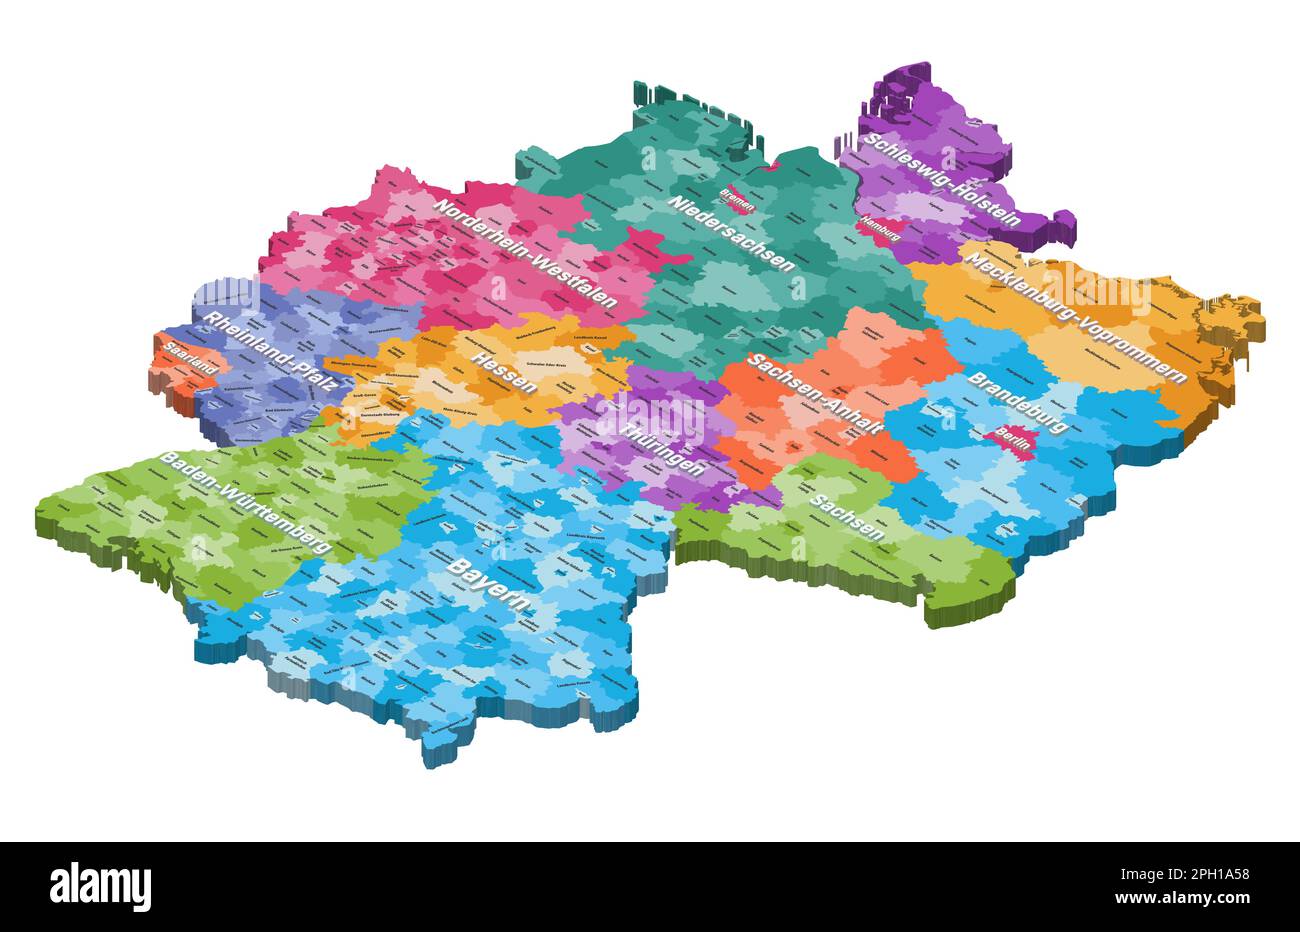 Isometrische Karte Deutschlands, nach Bundesstaaten und Verwaltungsbezirken farblich dargestellt, mit Inschriften Stock Vektor